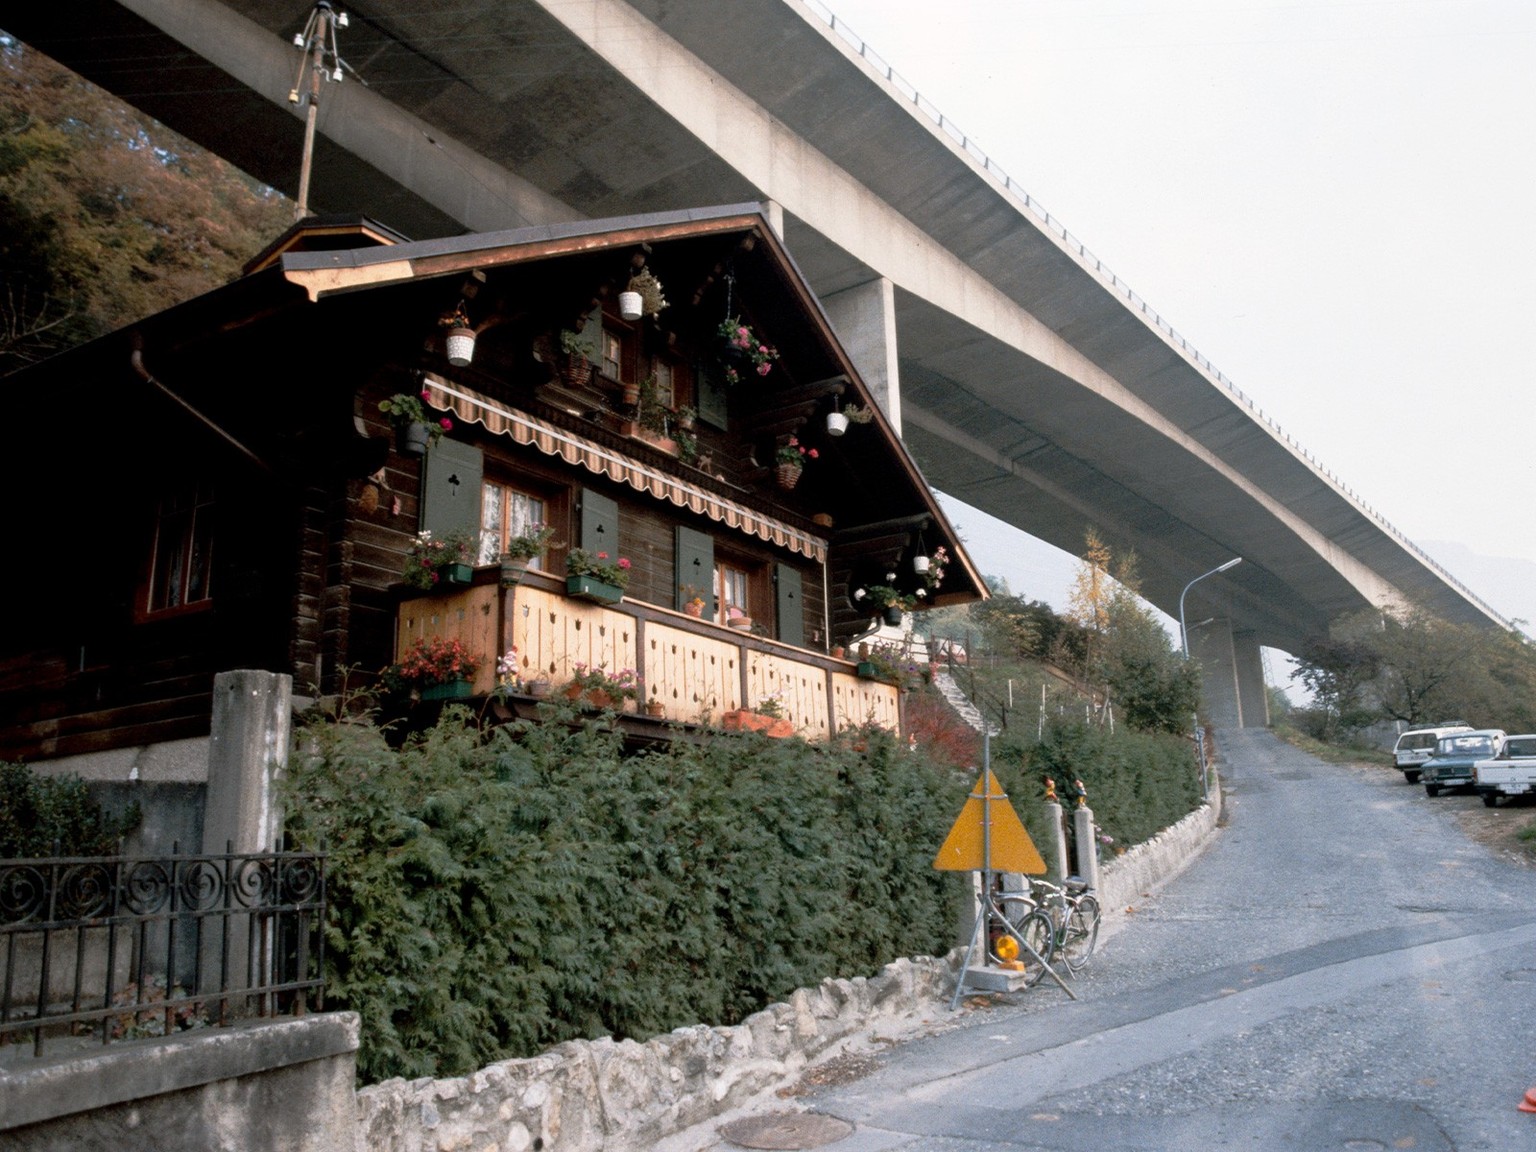 Chalet sous le viaduc de Chillon à Villeneuve VD, 1985.
https://permalink.nationalmuseum.ch/100642119